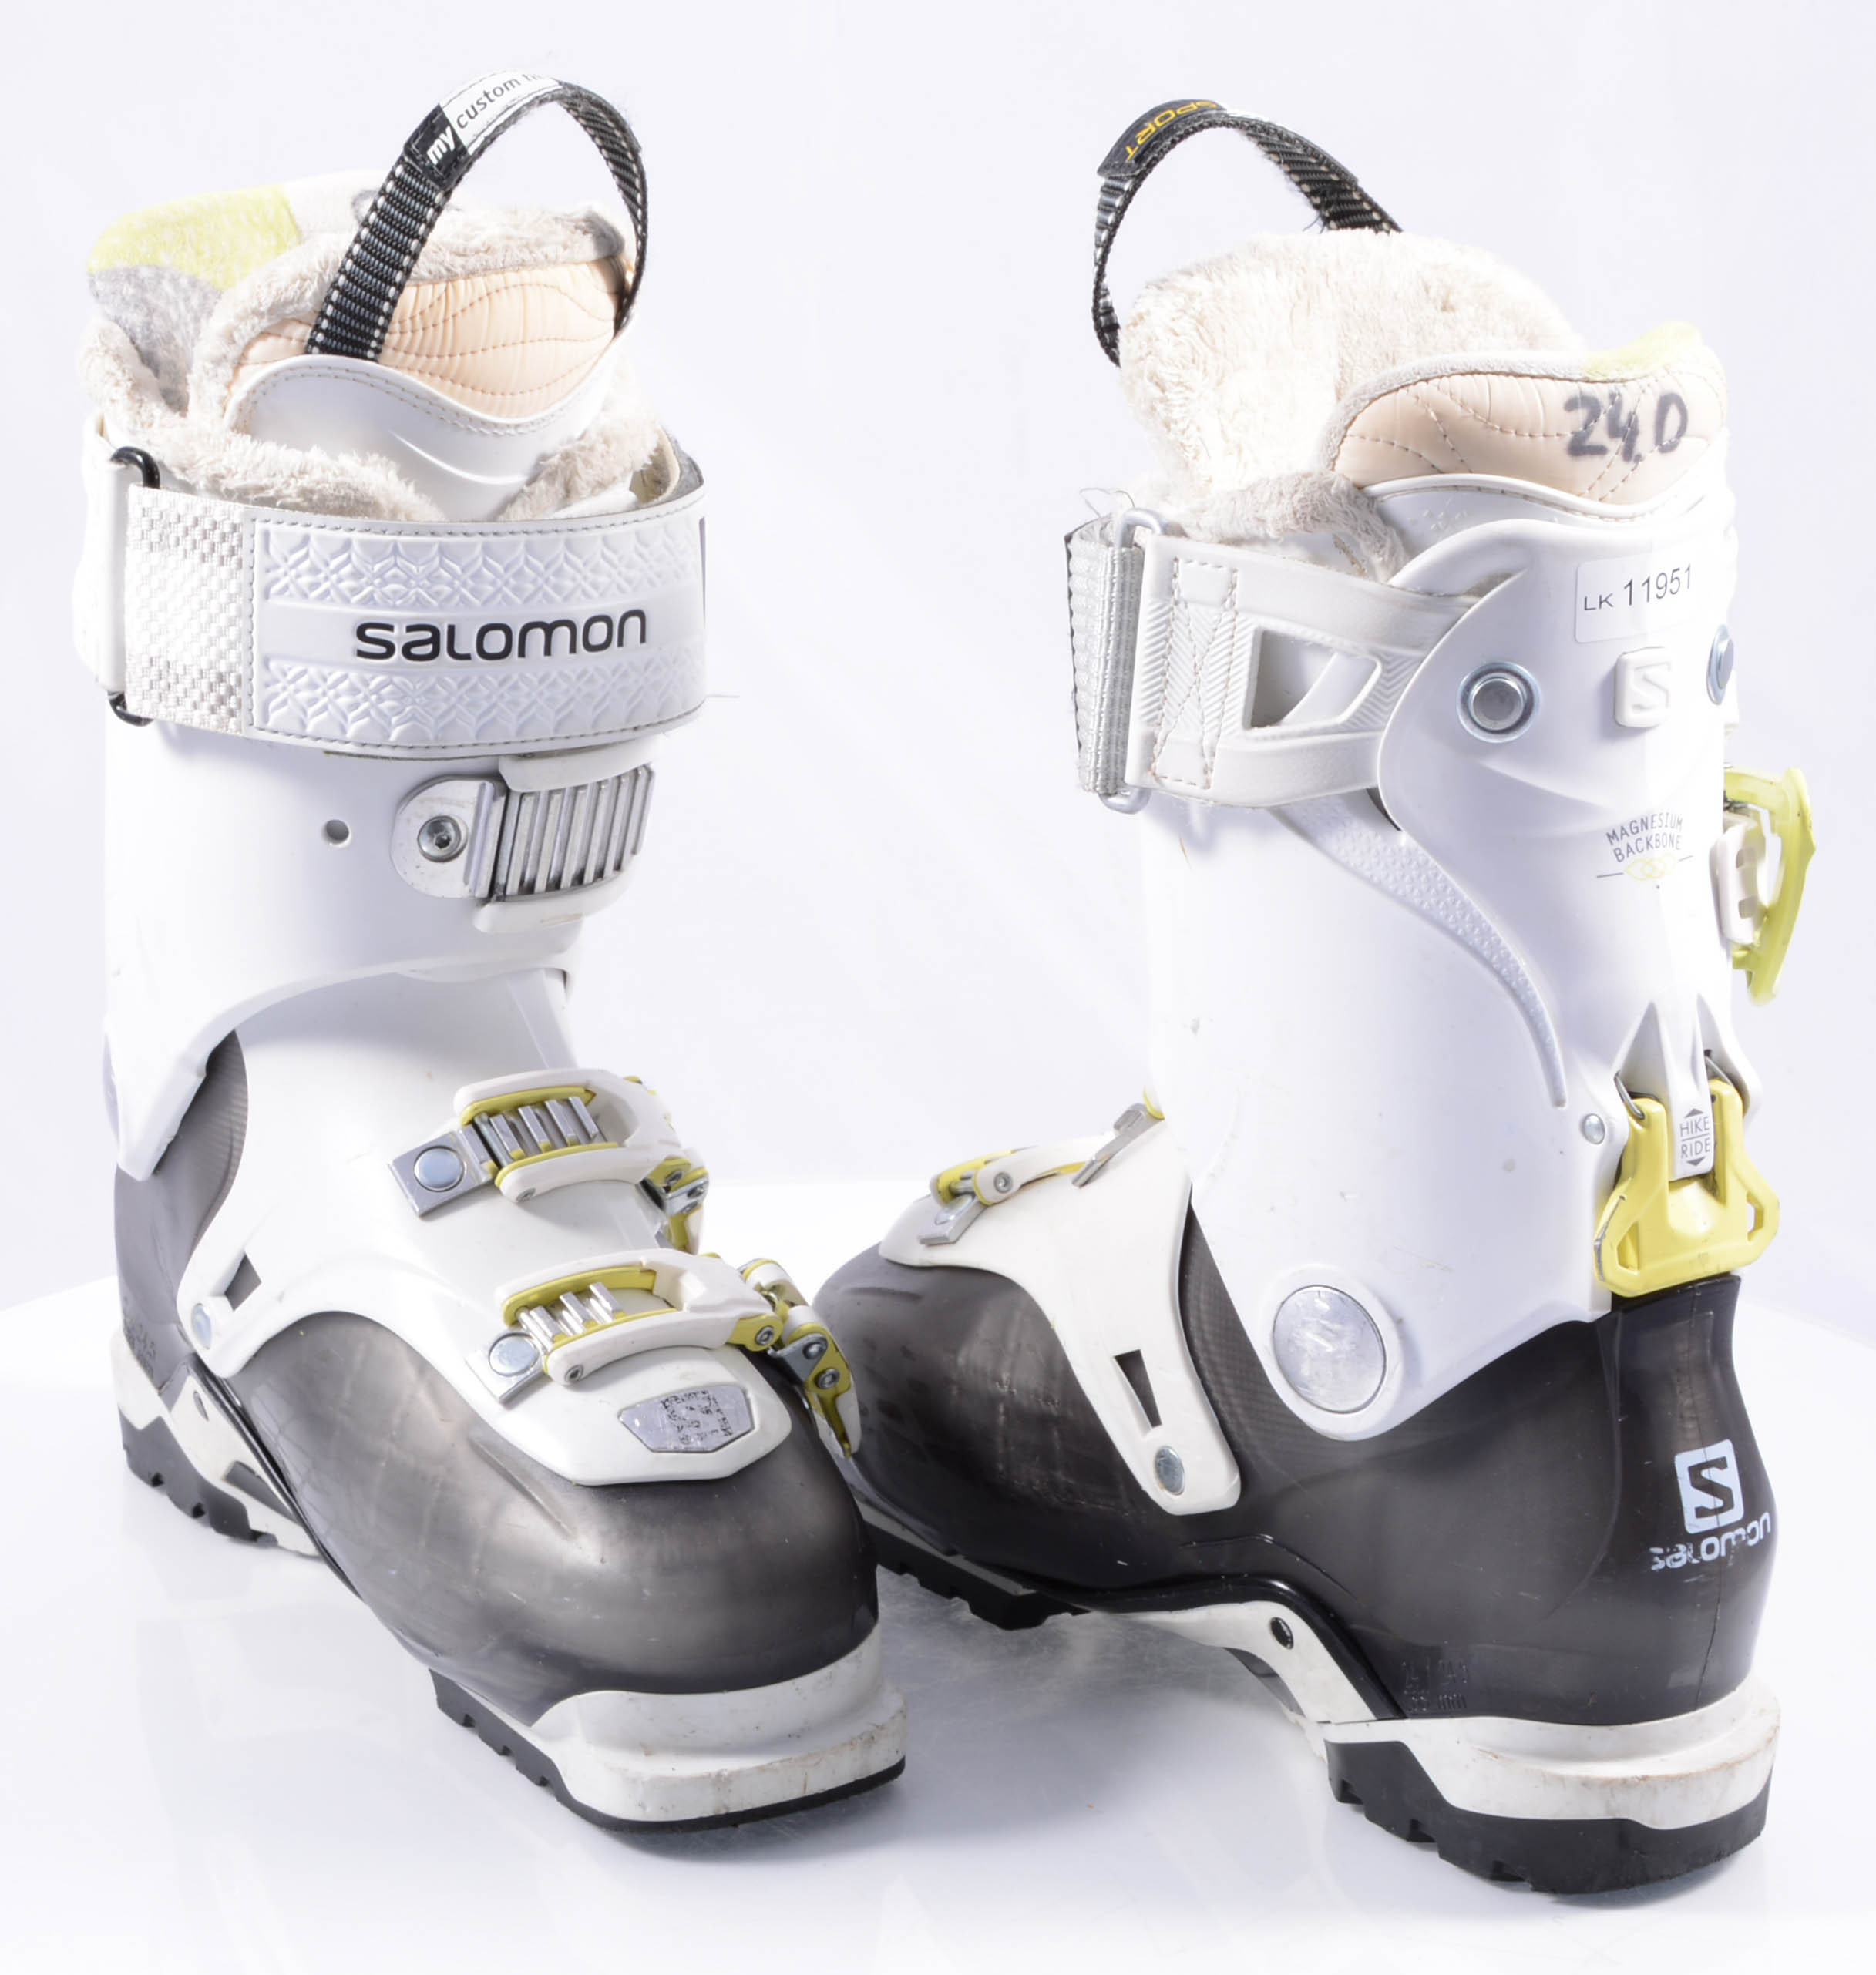 Fascinate Hare Secréte women's ski boots SALOMON QUEST ACCESS 80 W, SKI/WALK, magnesium backbone,  micro, grey/white/yellow ( TOP condition ) - Mardosport.com